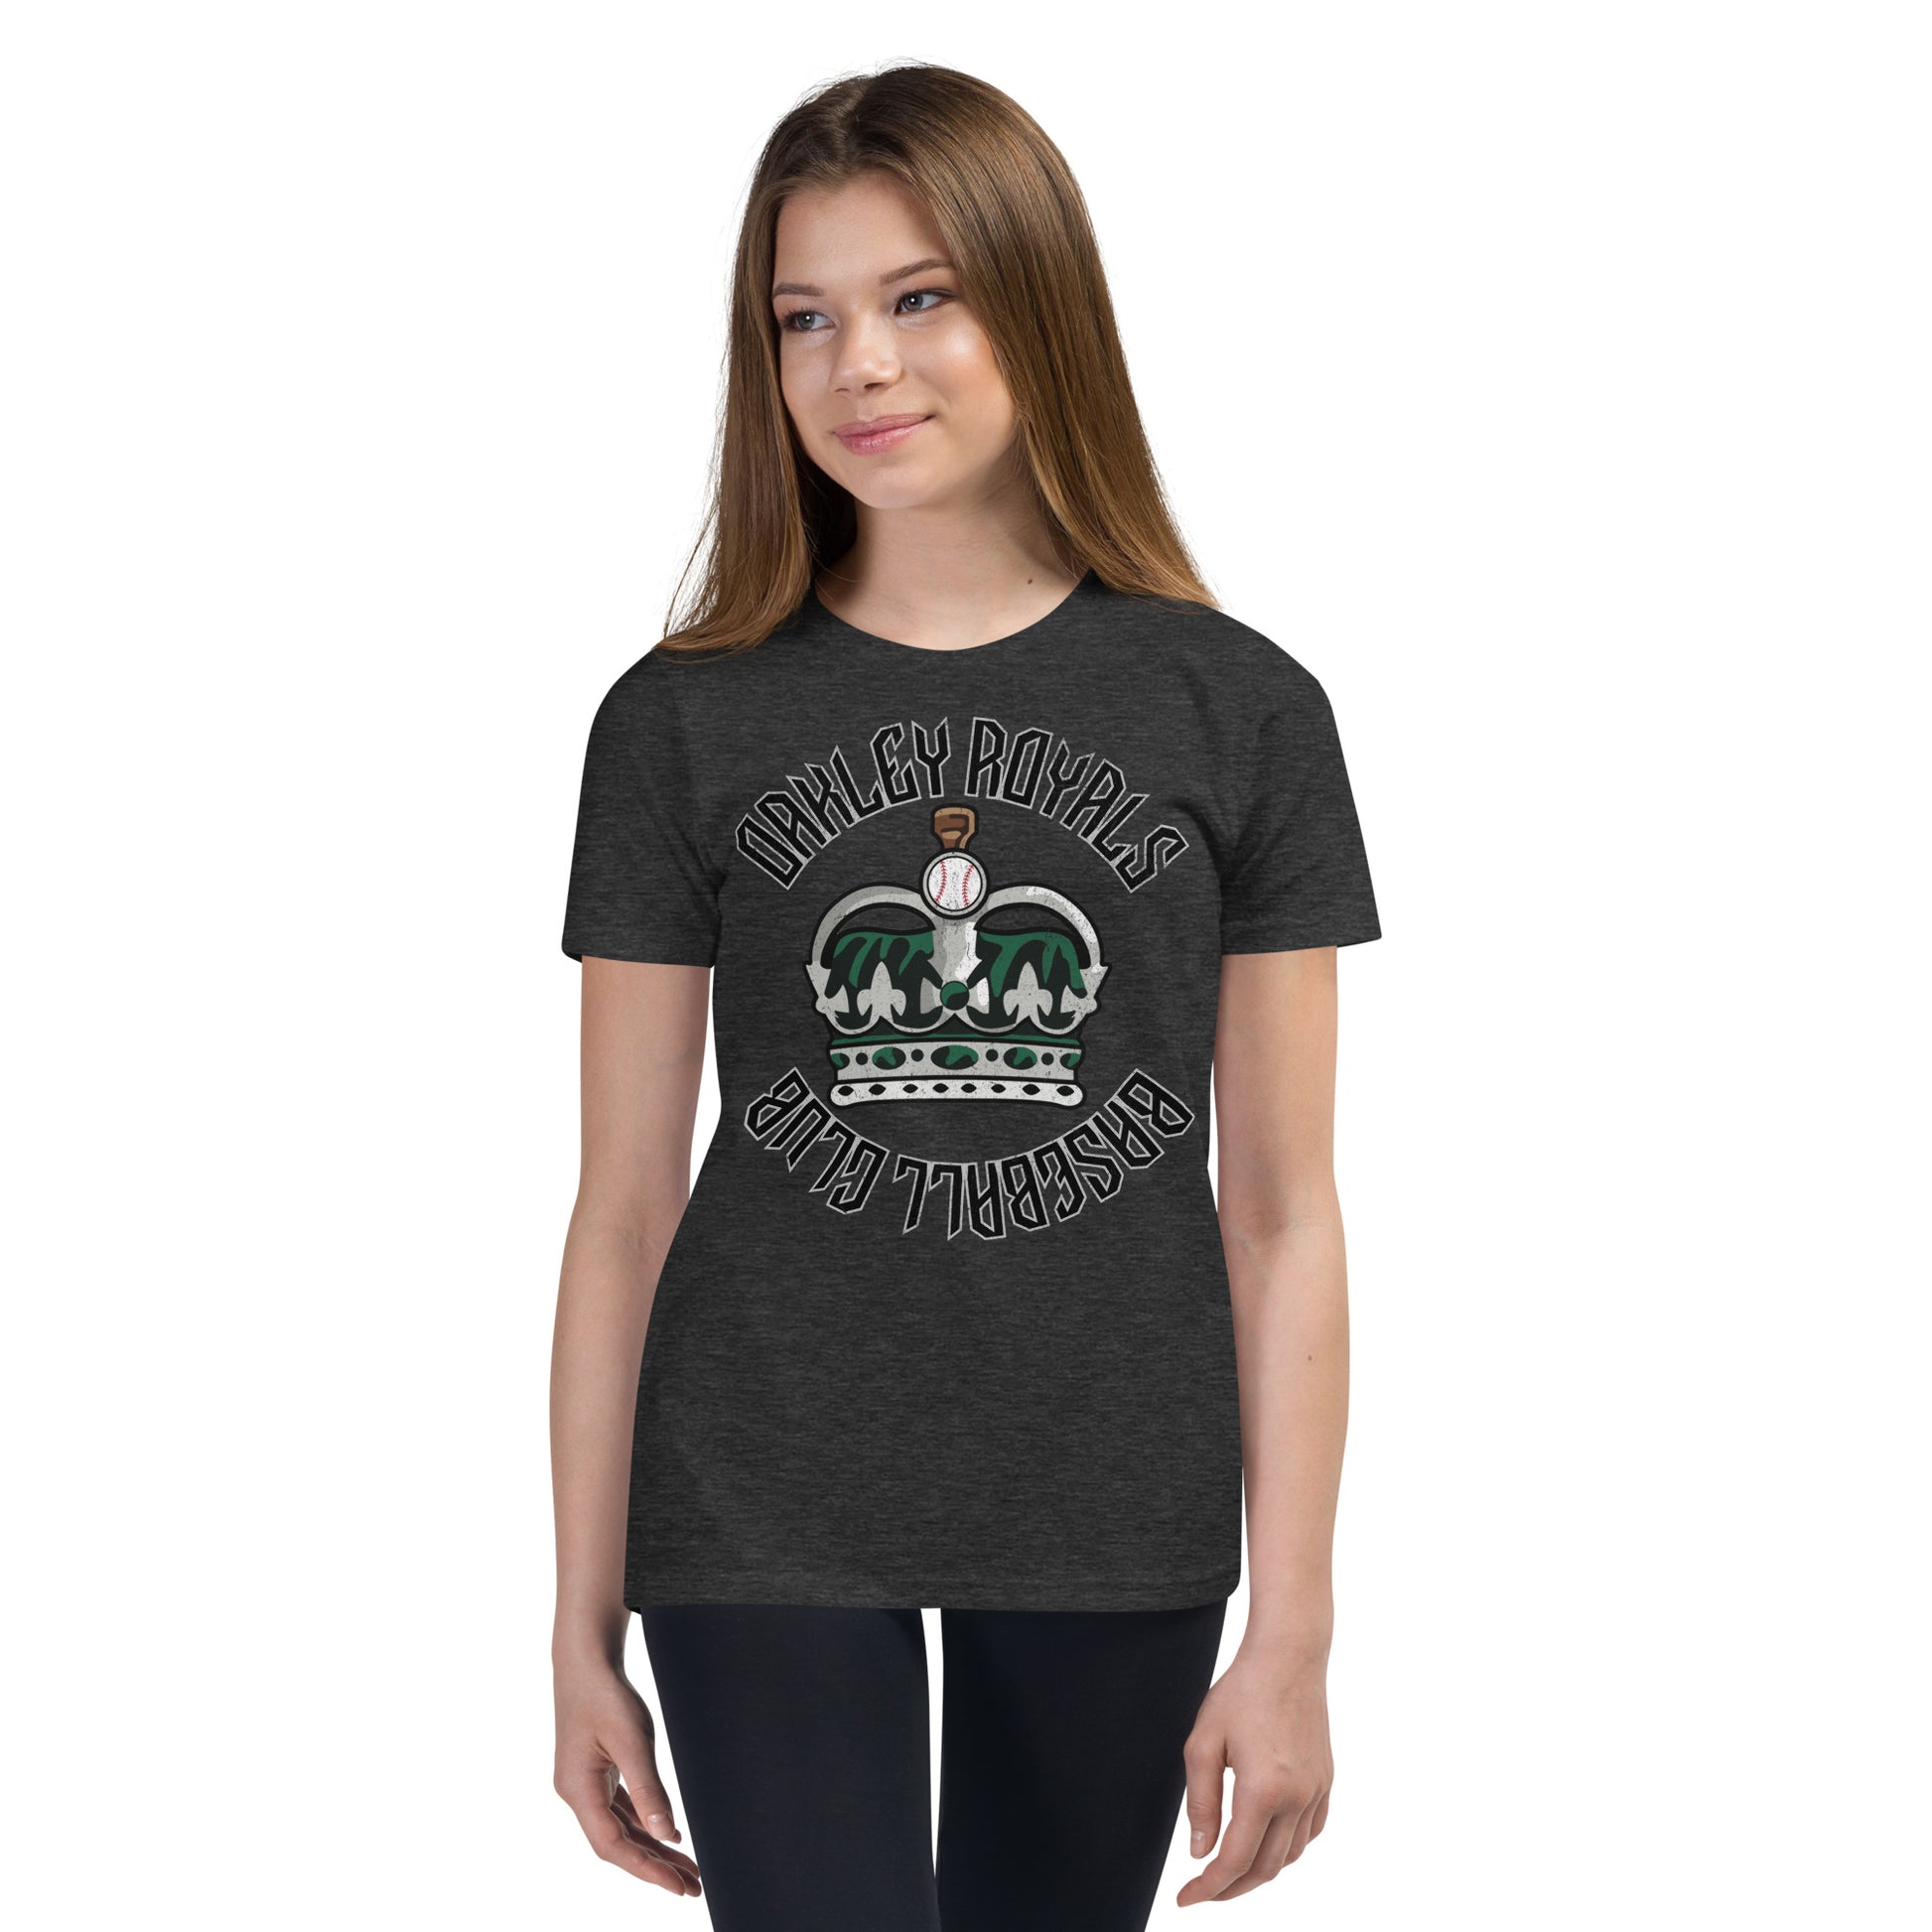 Royals Baseball Club Youth Short Sleeve T-Shirt – Oakley Royals Drip